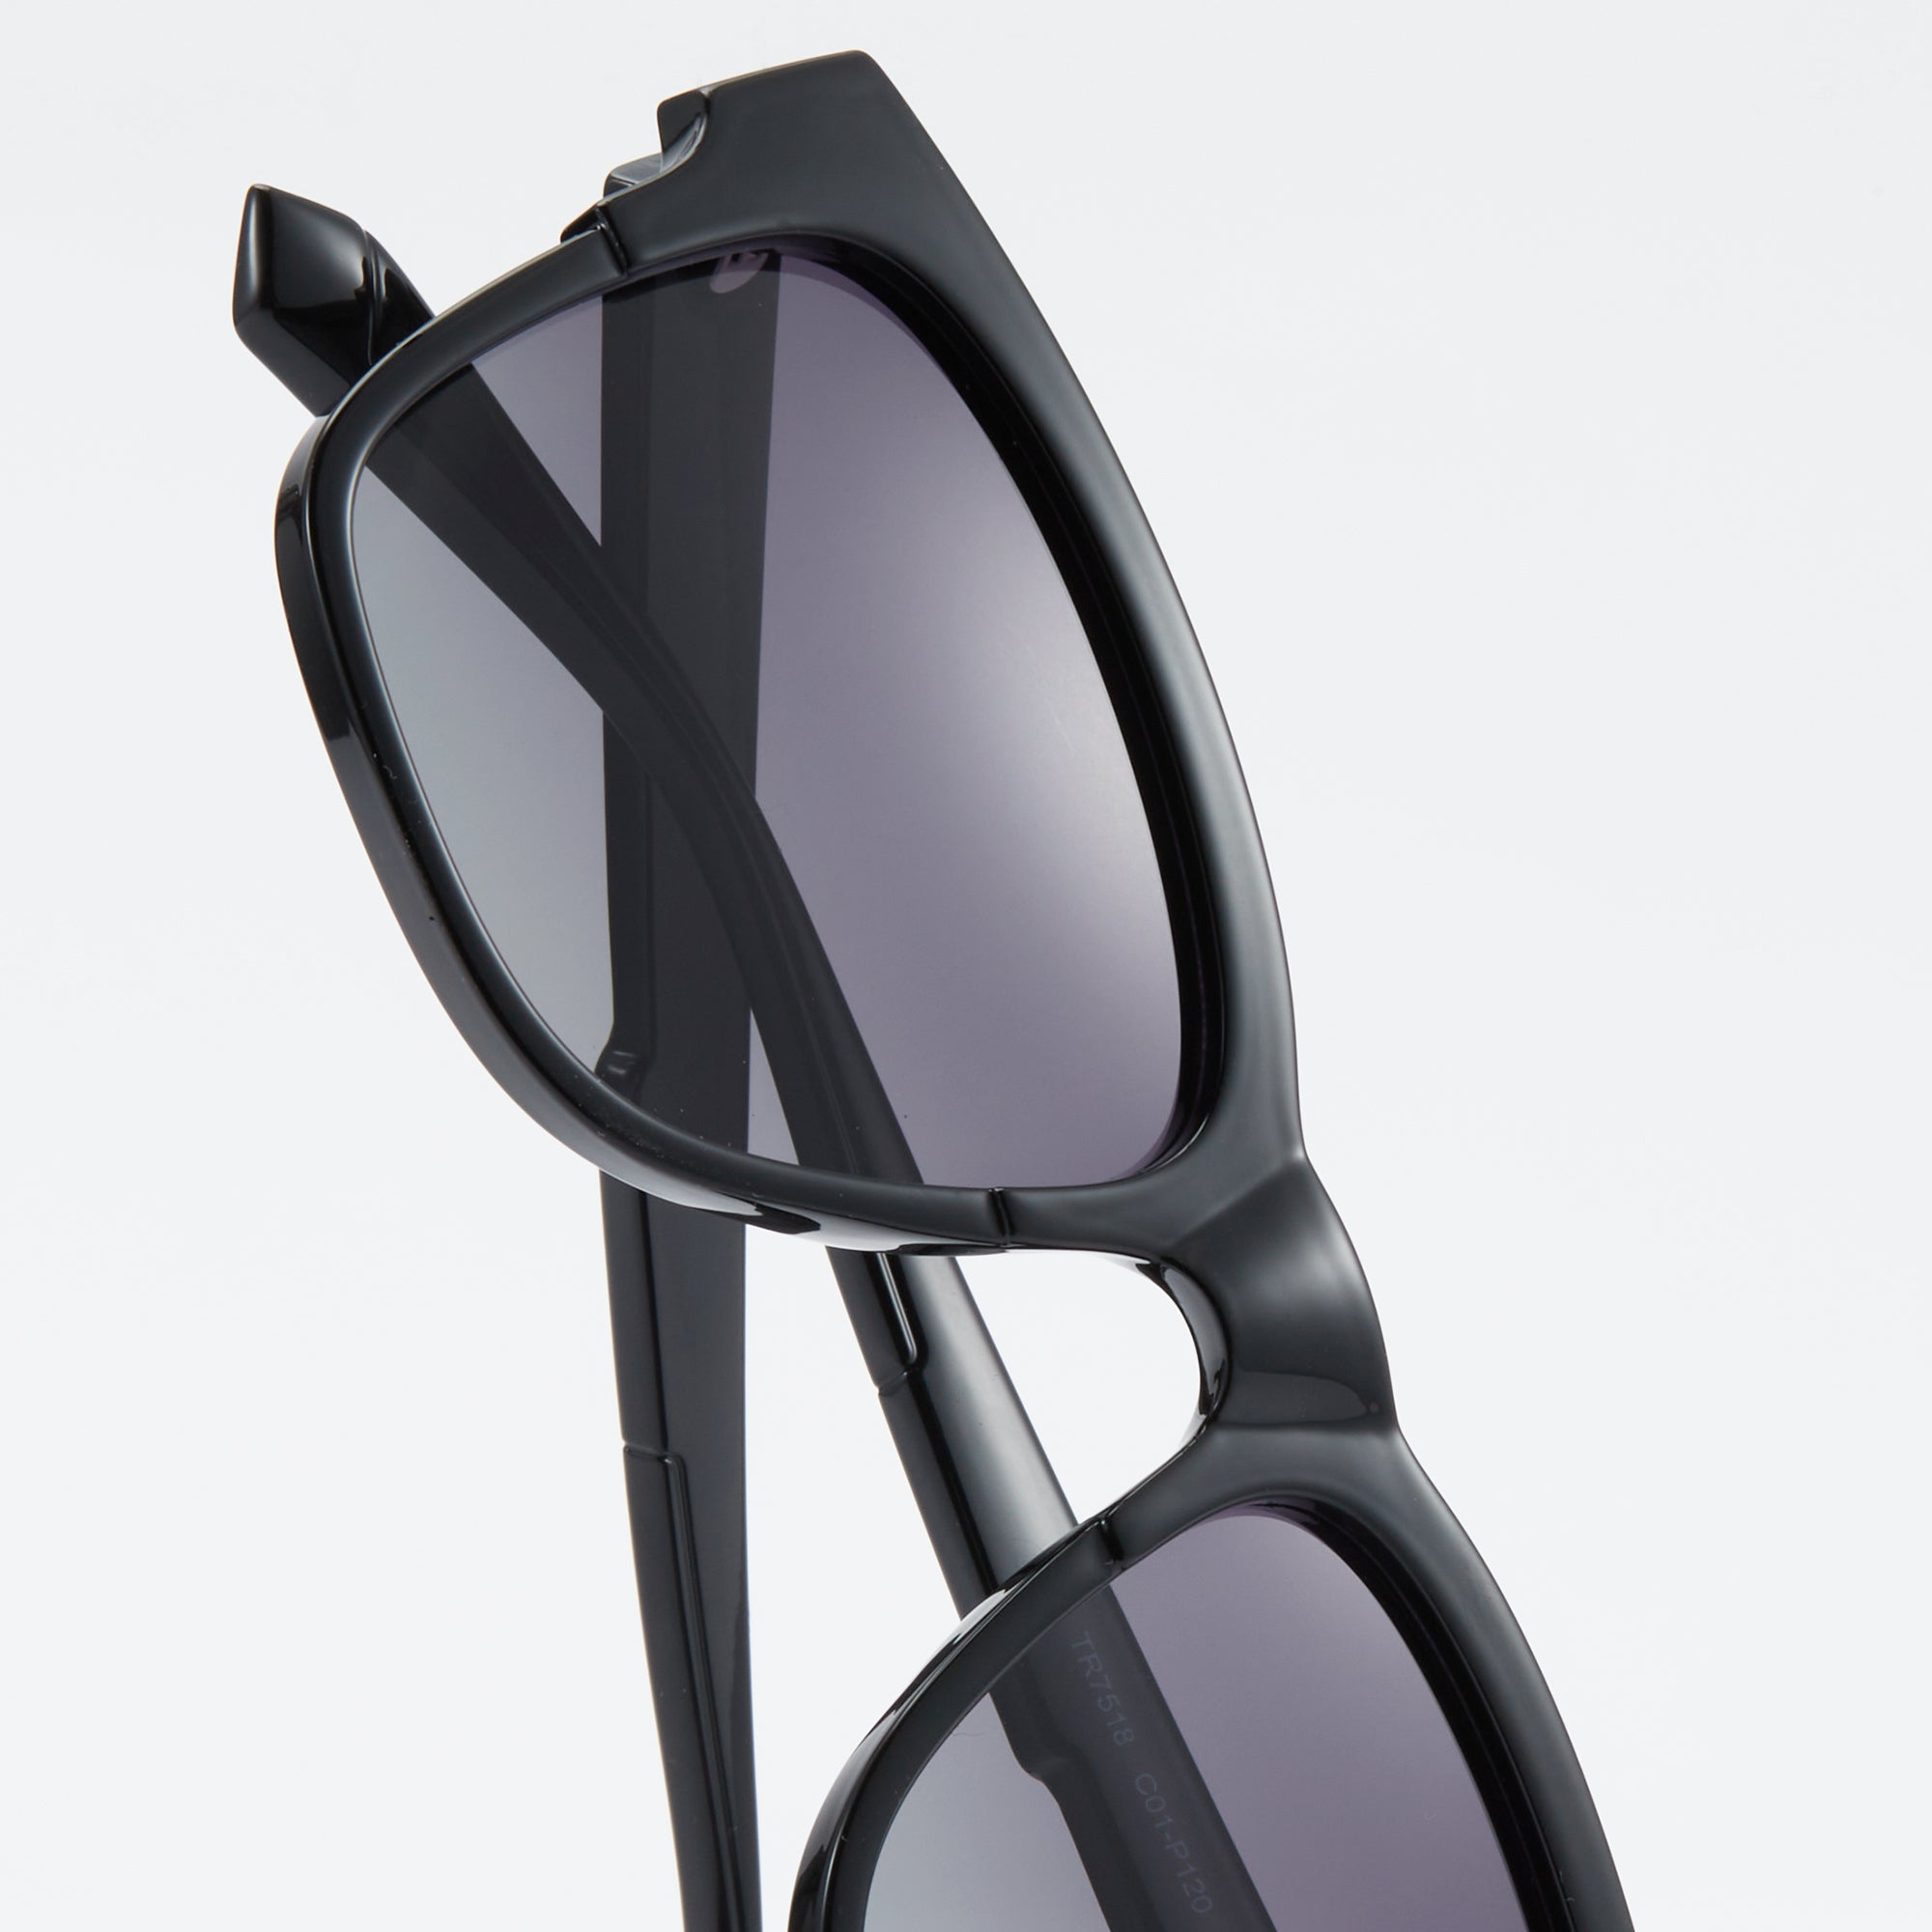 Oversized Polarized Sunglasses 1064